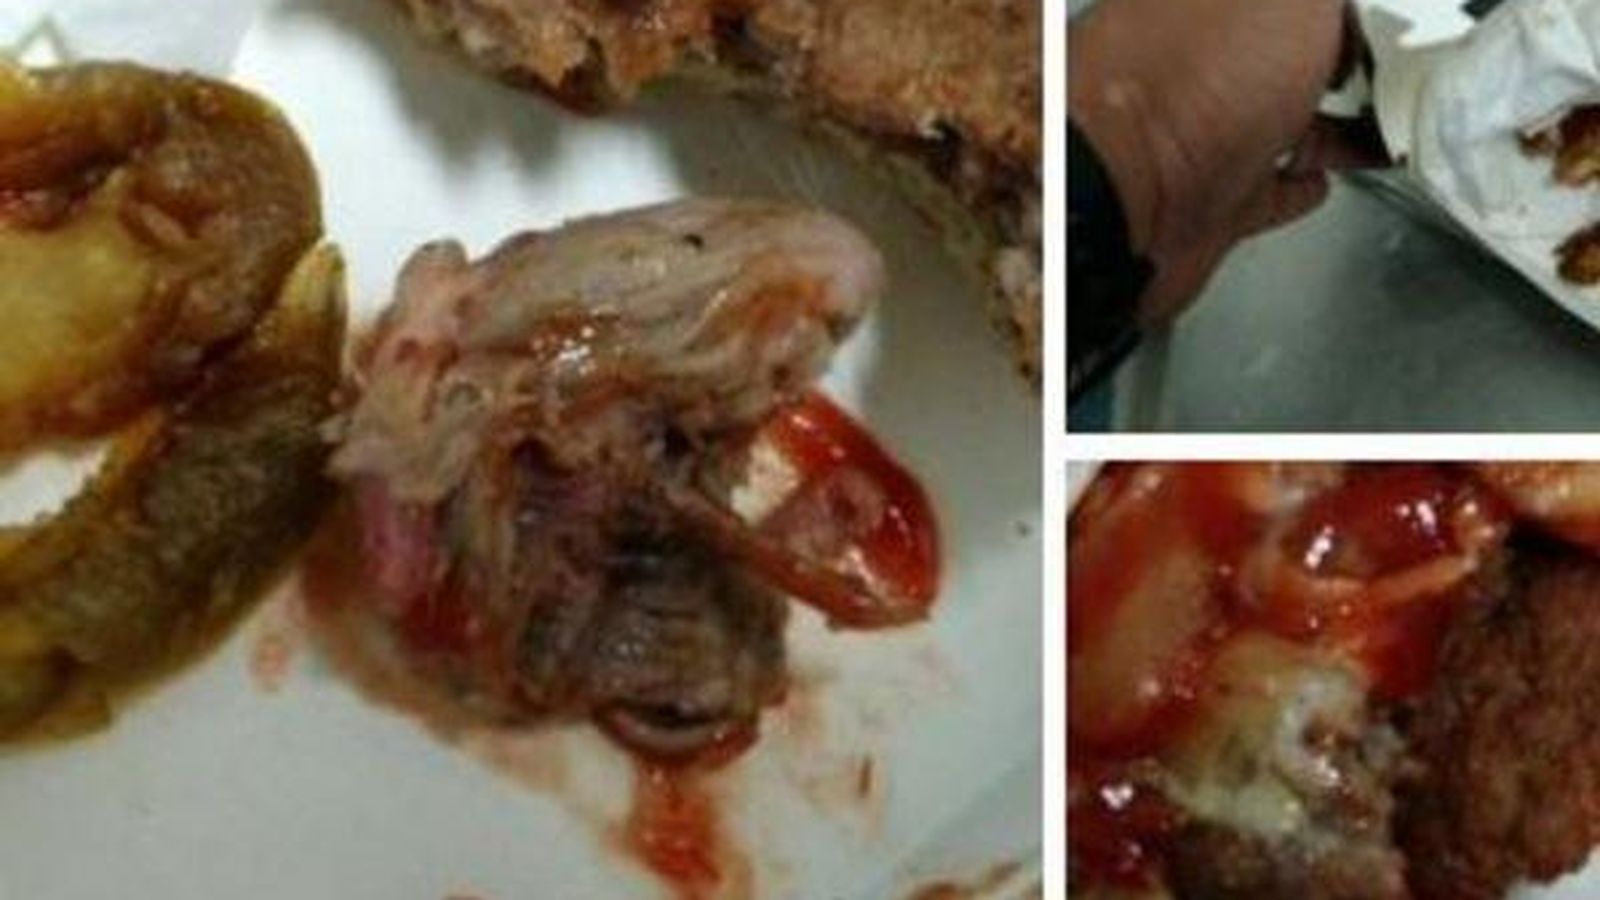 Foto: La cabeza del roedor tal y como apareció en el interior de la hamburguesa. (Twitter)